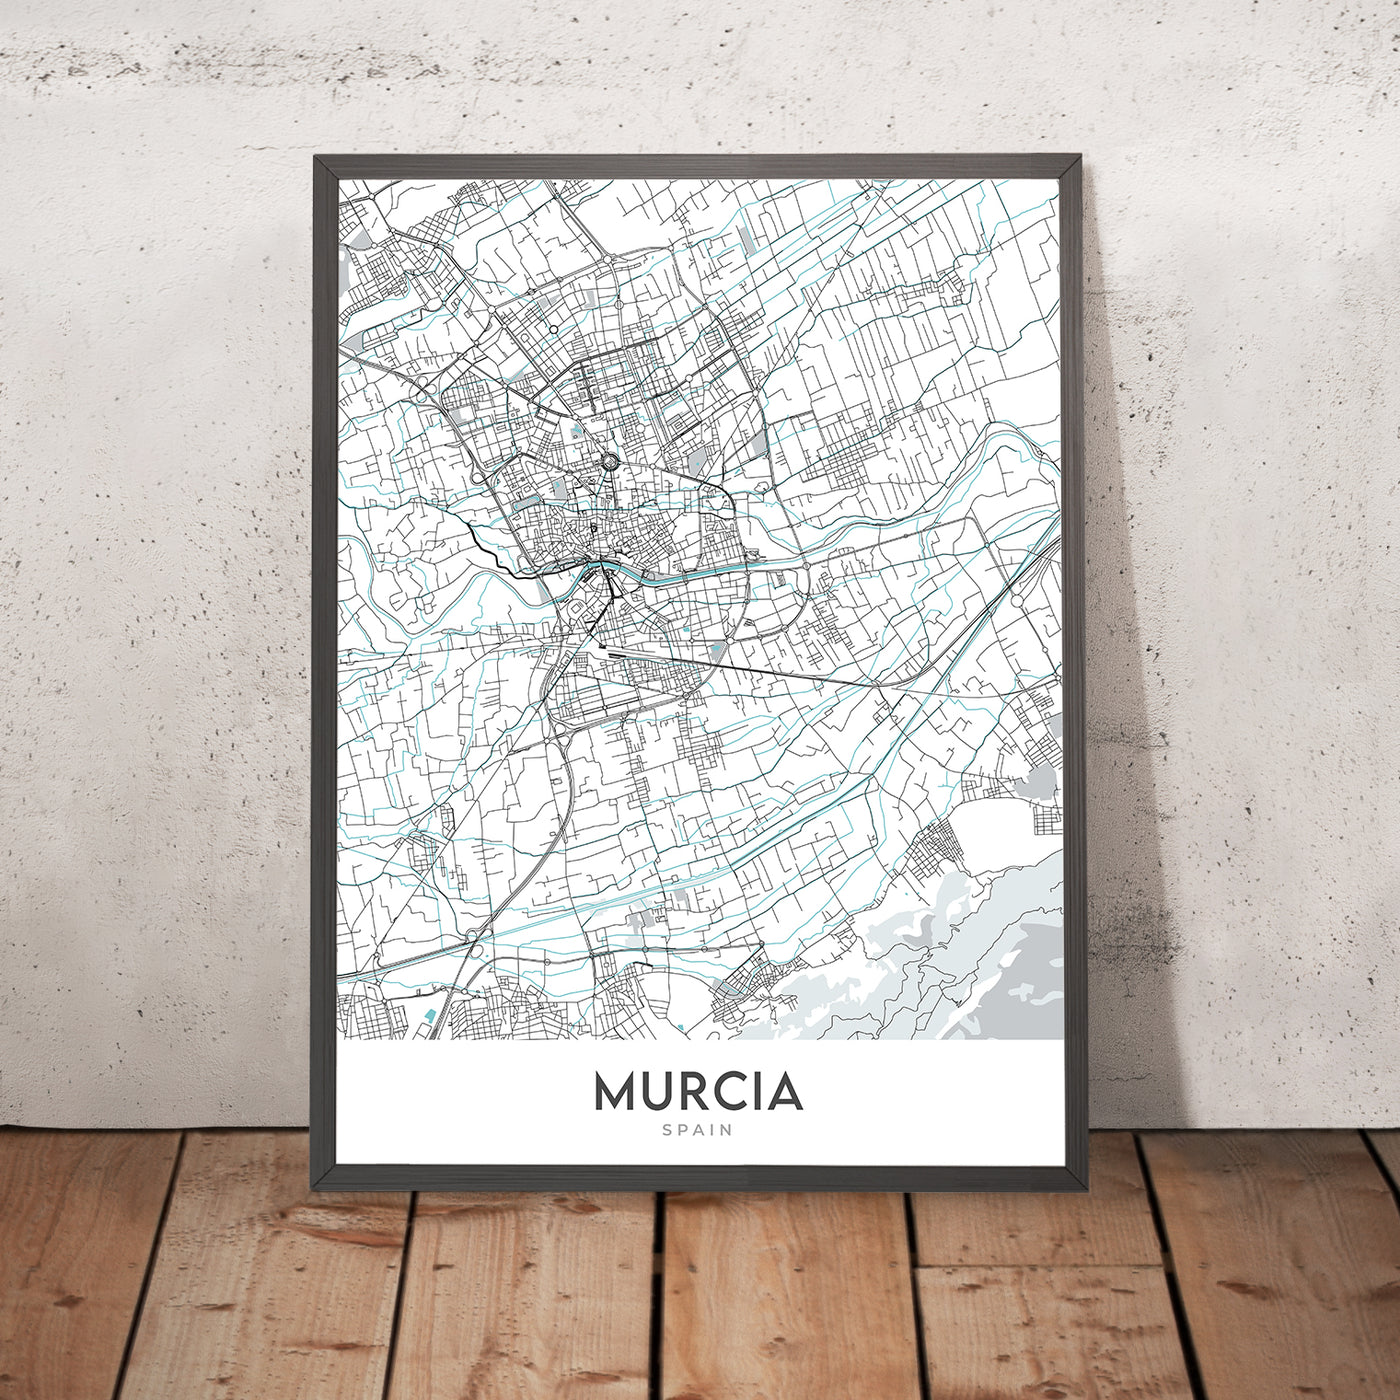 Plan de la ville moderne de Murcie, Espagne : cathédrale, casino, théâtre, place, rues